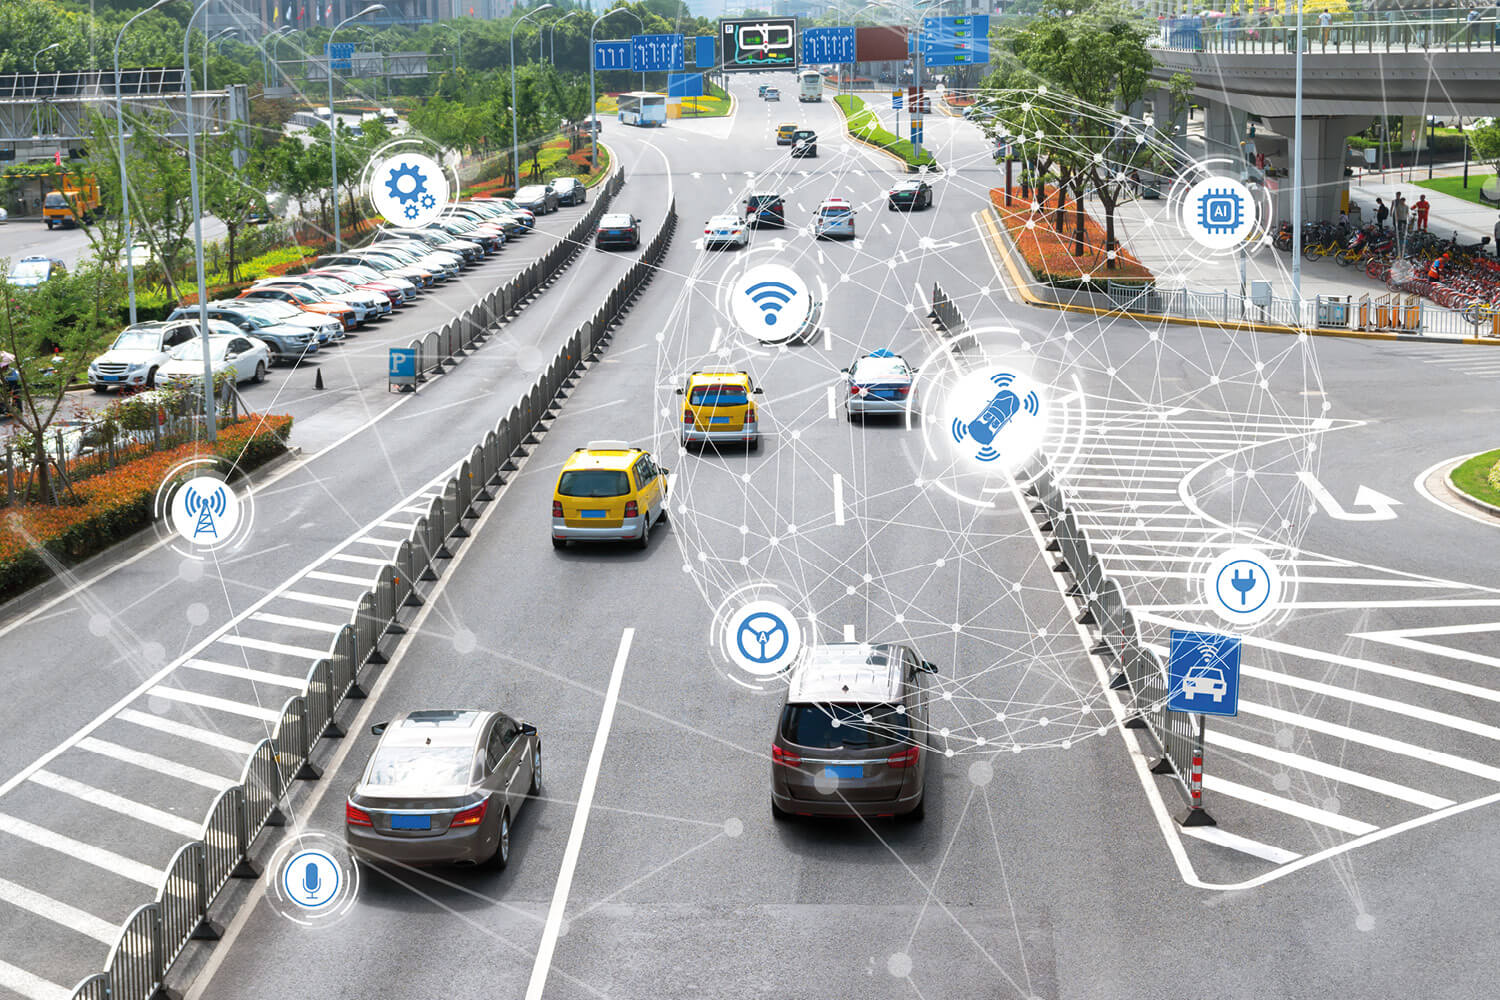 Visualisierung des Stadtverkehrs mit mehreren Fahrstreifen, darüber befinden sich Icons der Digitalisierung, die miteinander vernetzt sind.